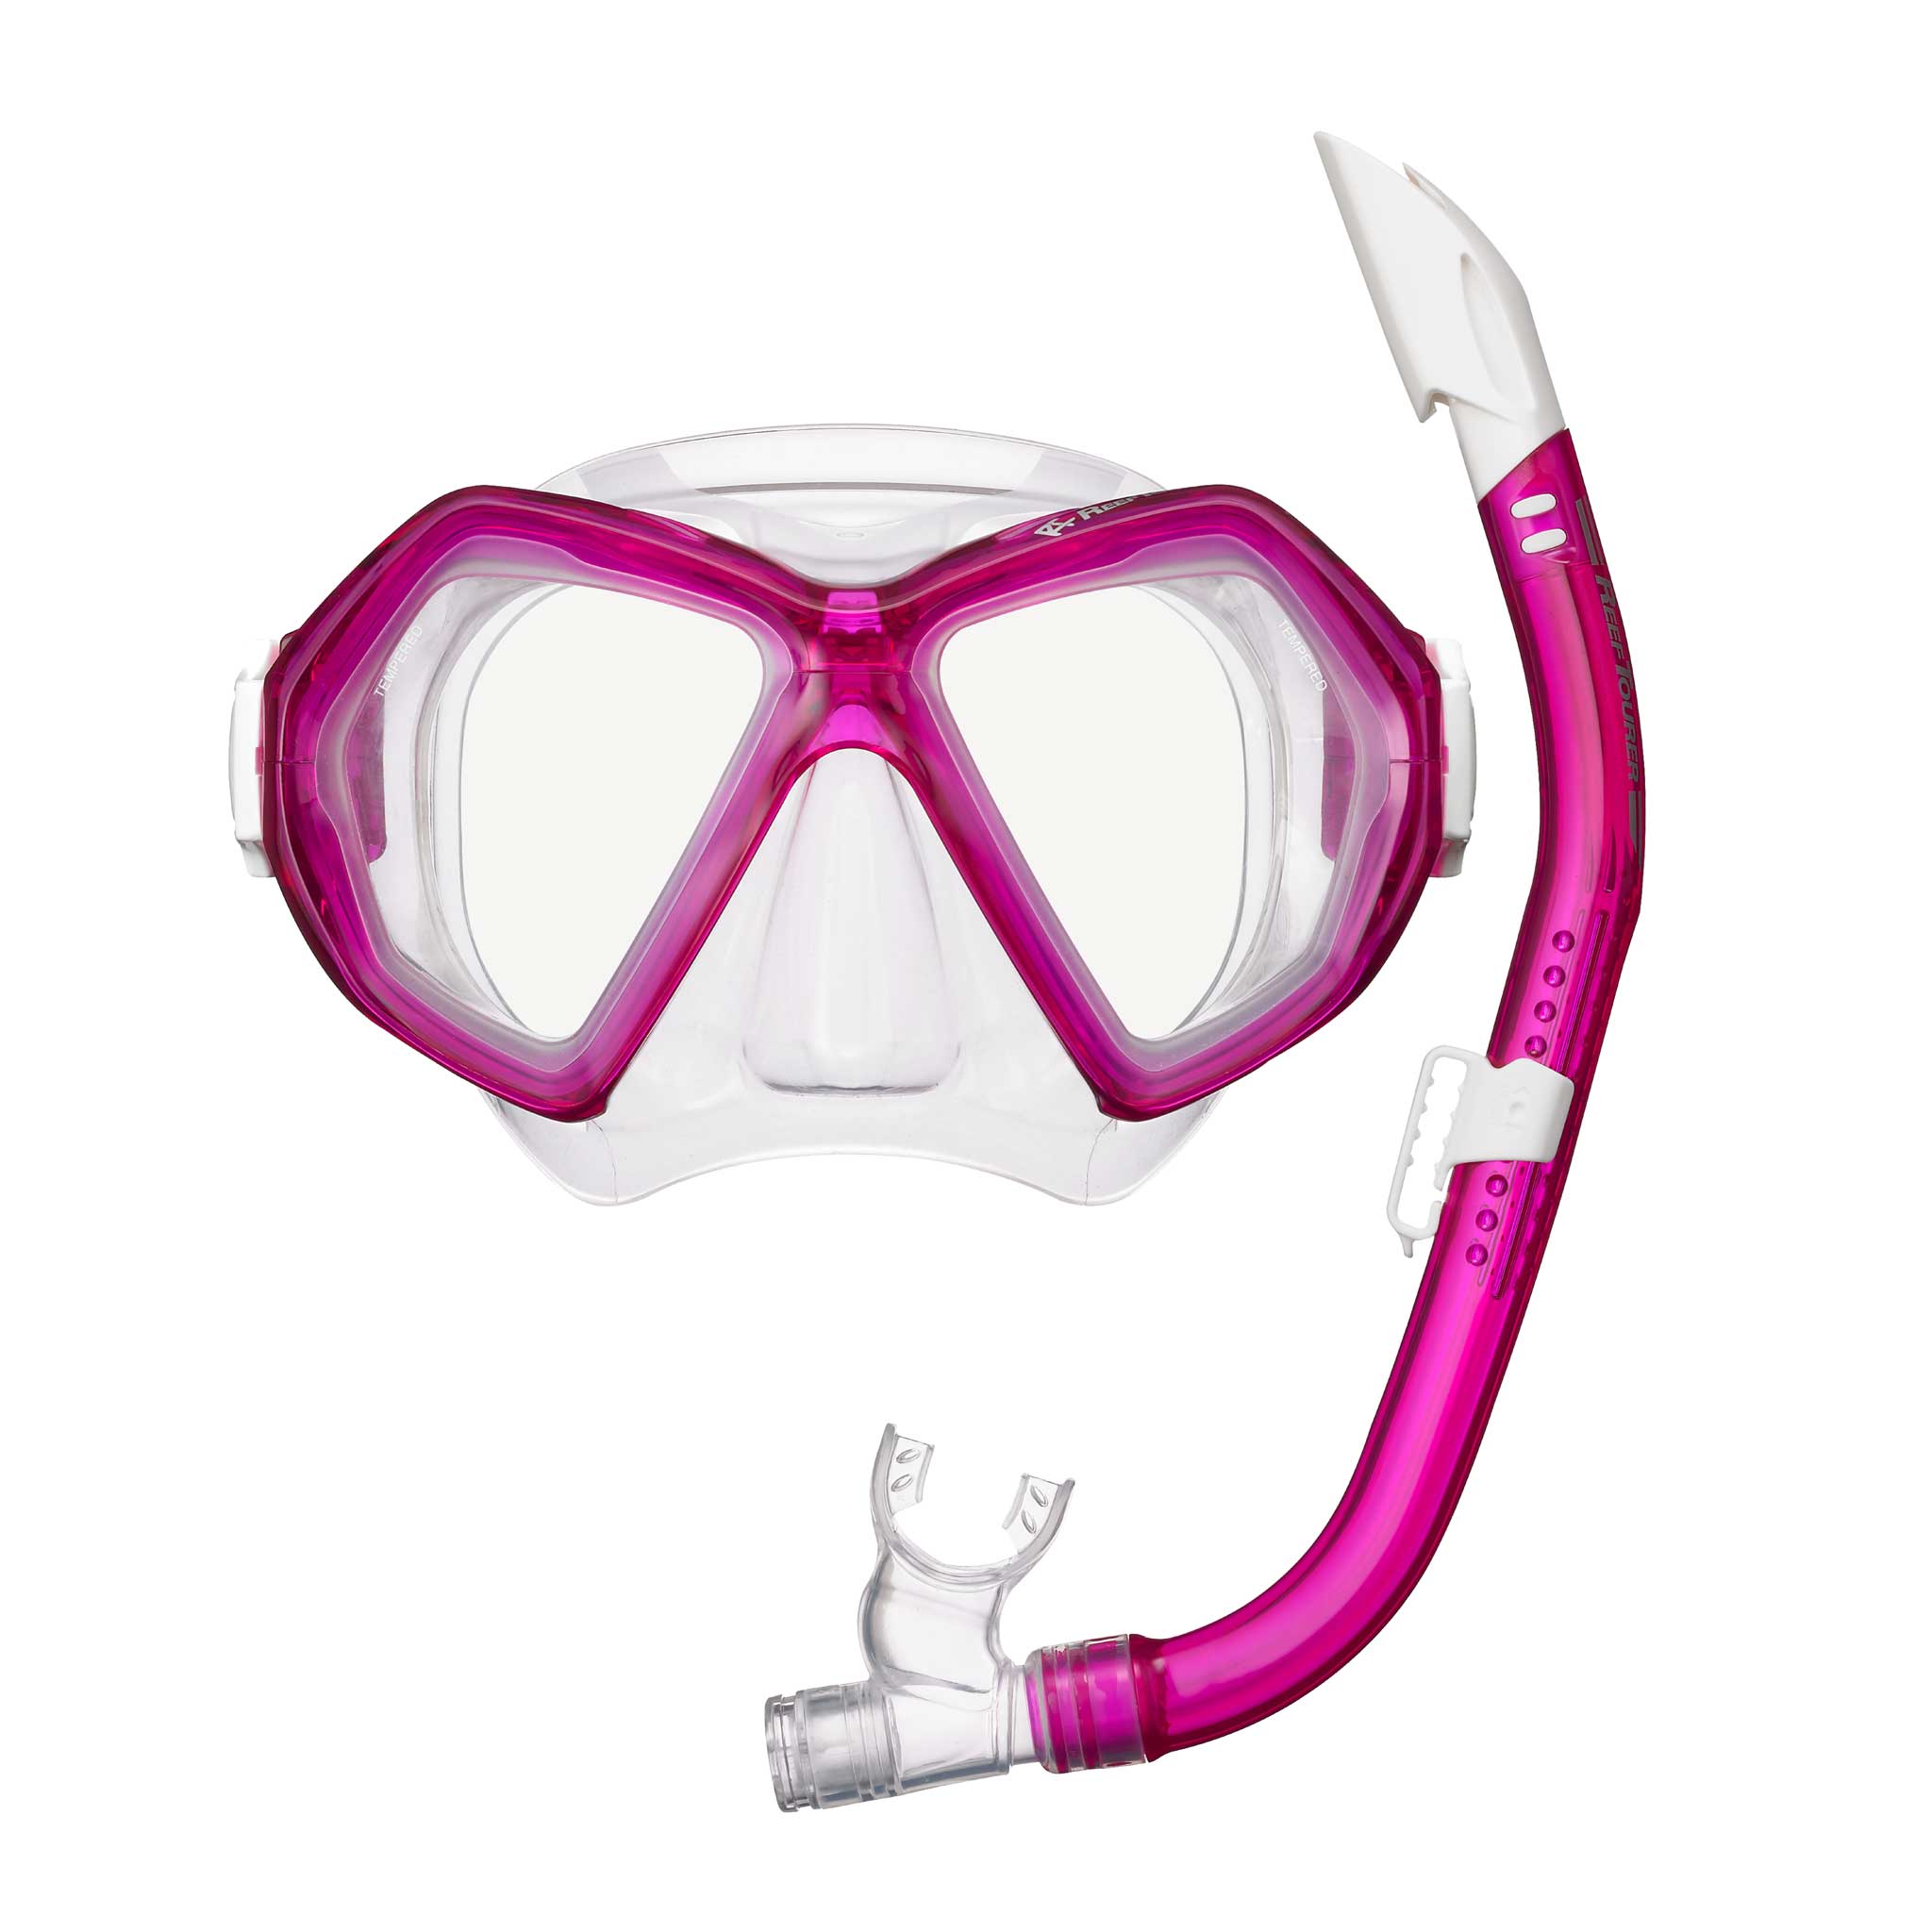 Наборы маска трубка. Reef Tourer маска+трубка. Tusa Reef Tourer маска с трубкой. Маска для снорклинга Tusa. Маска и трубка набор для подводного плавания Reef Tourer.